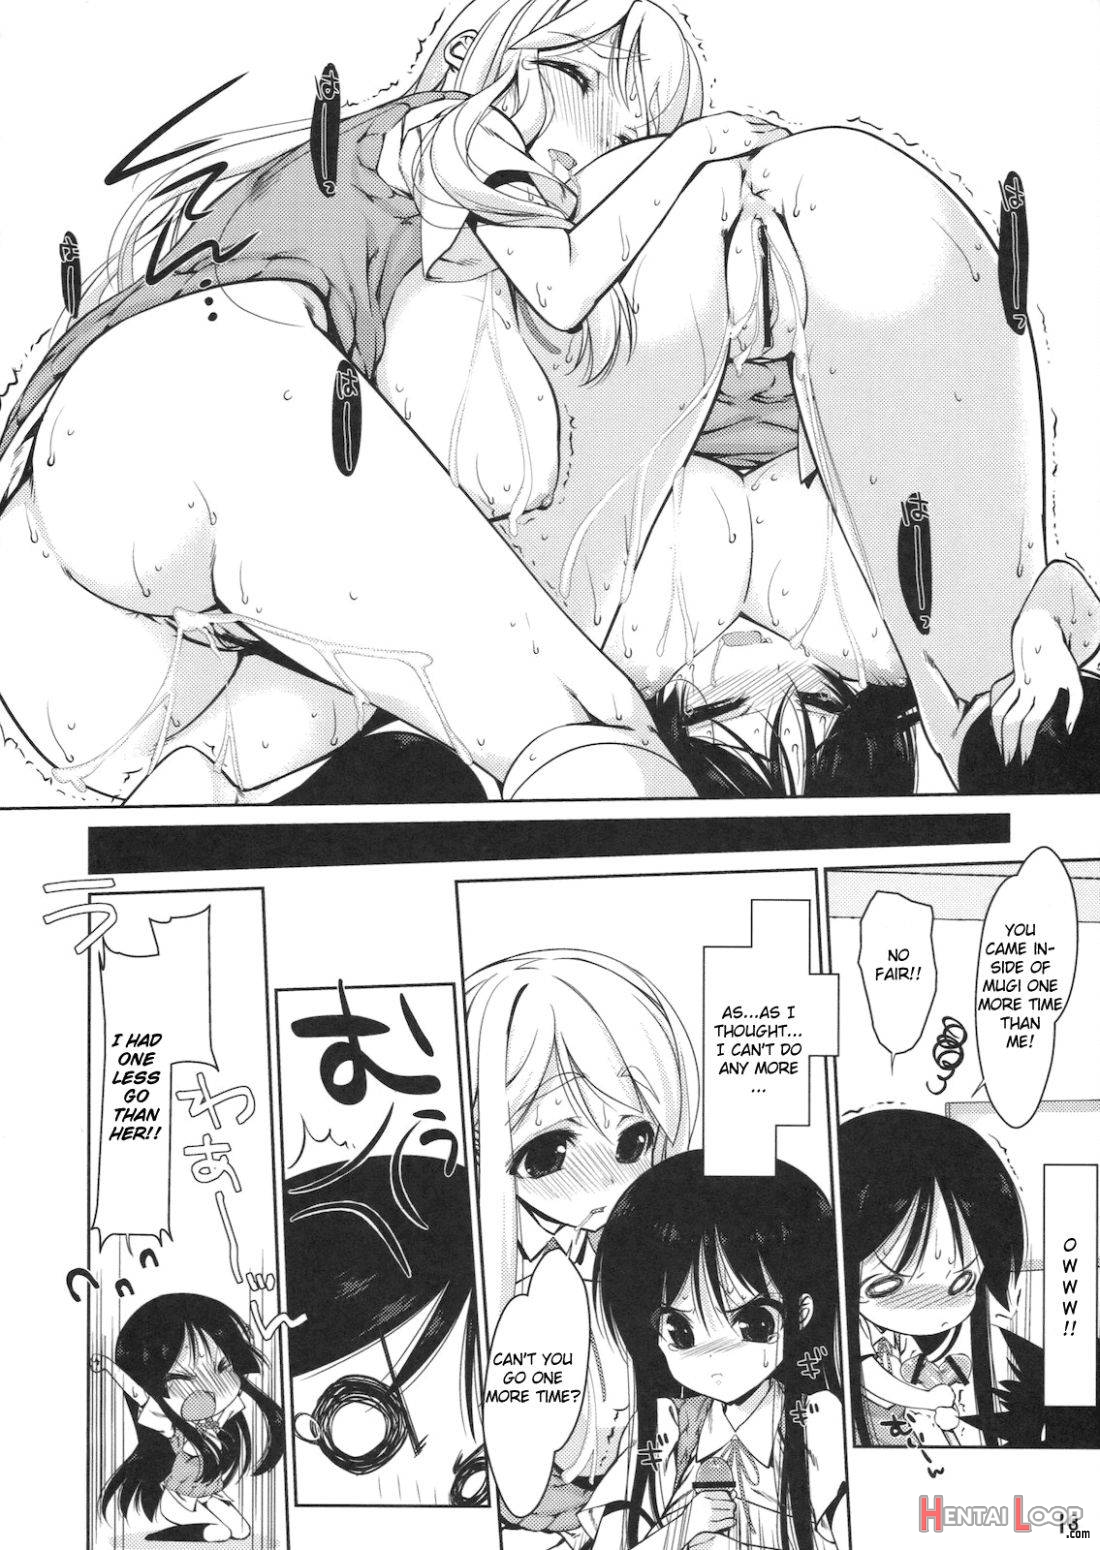 Mio-tan! 6 Mugi-chan to page 15